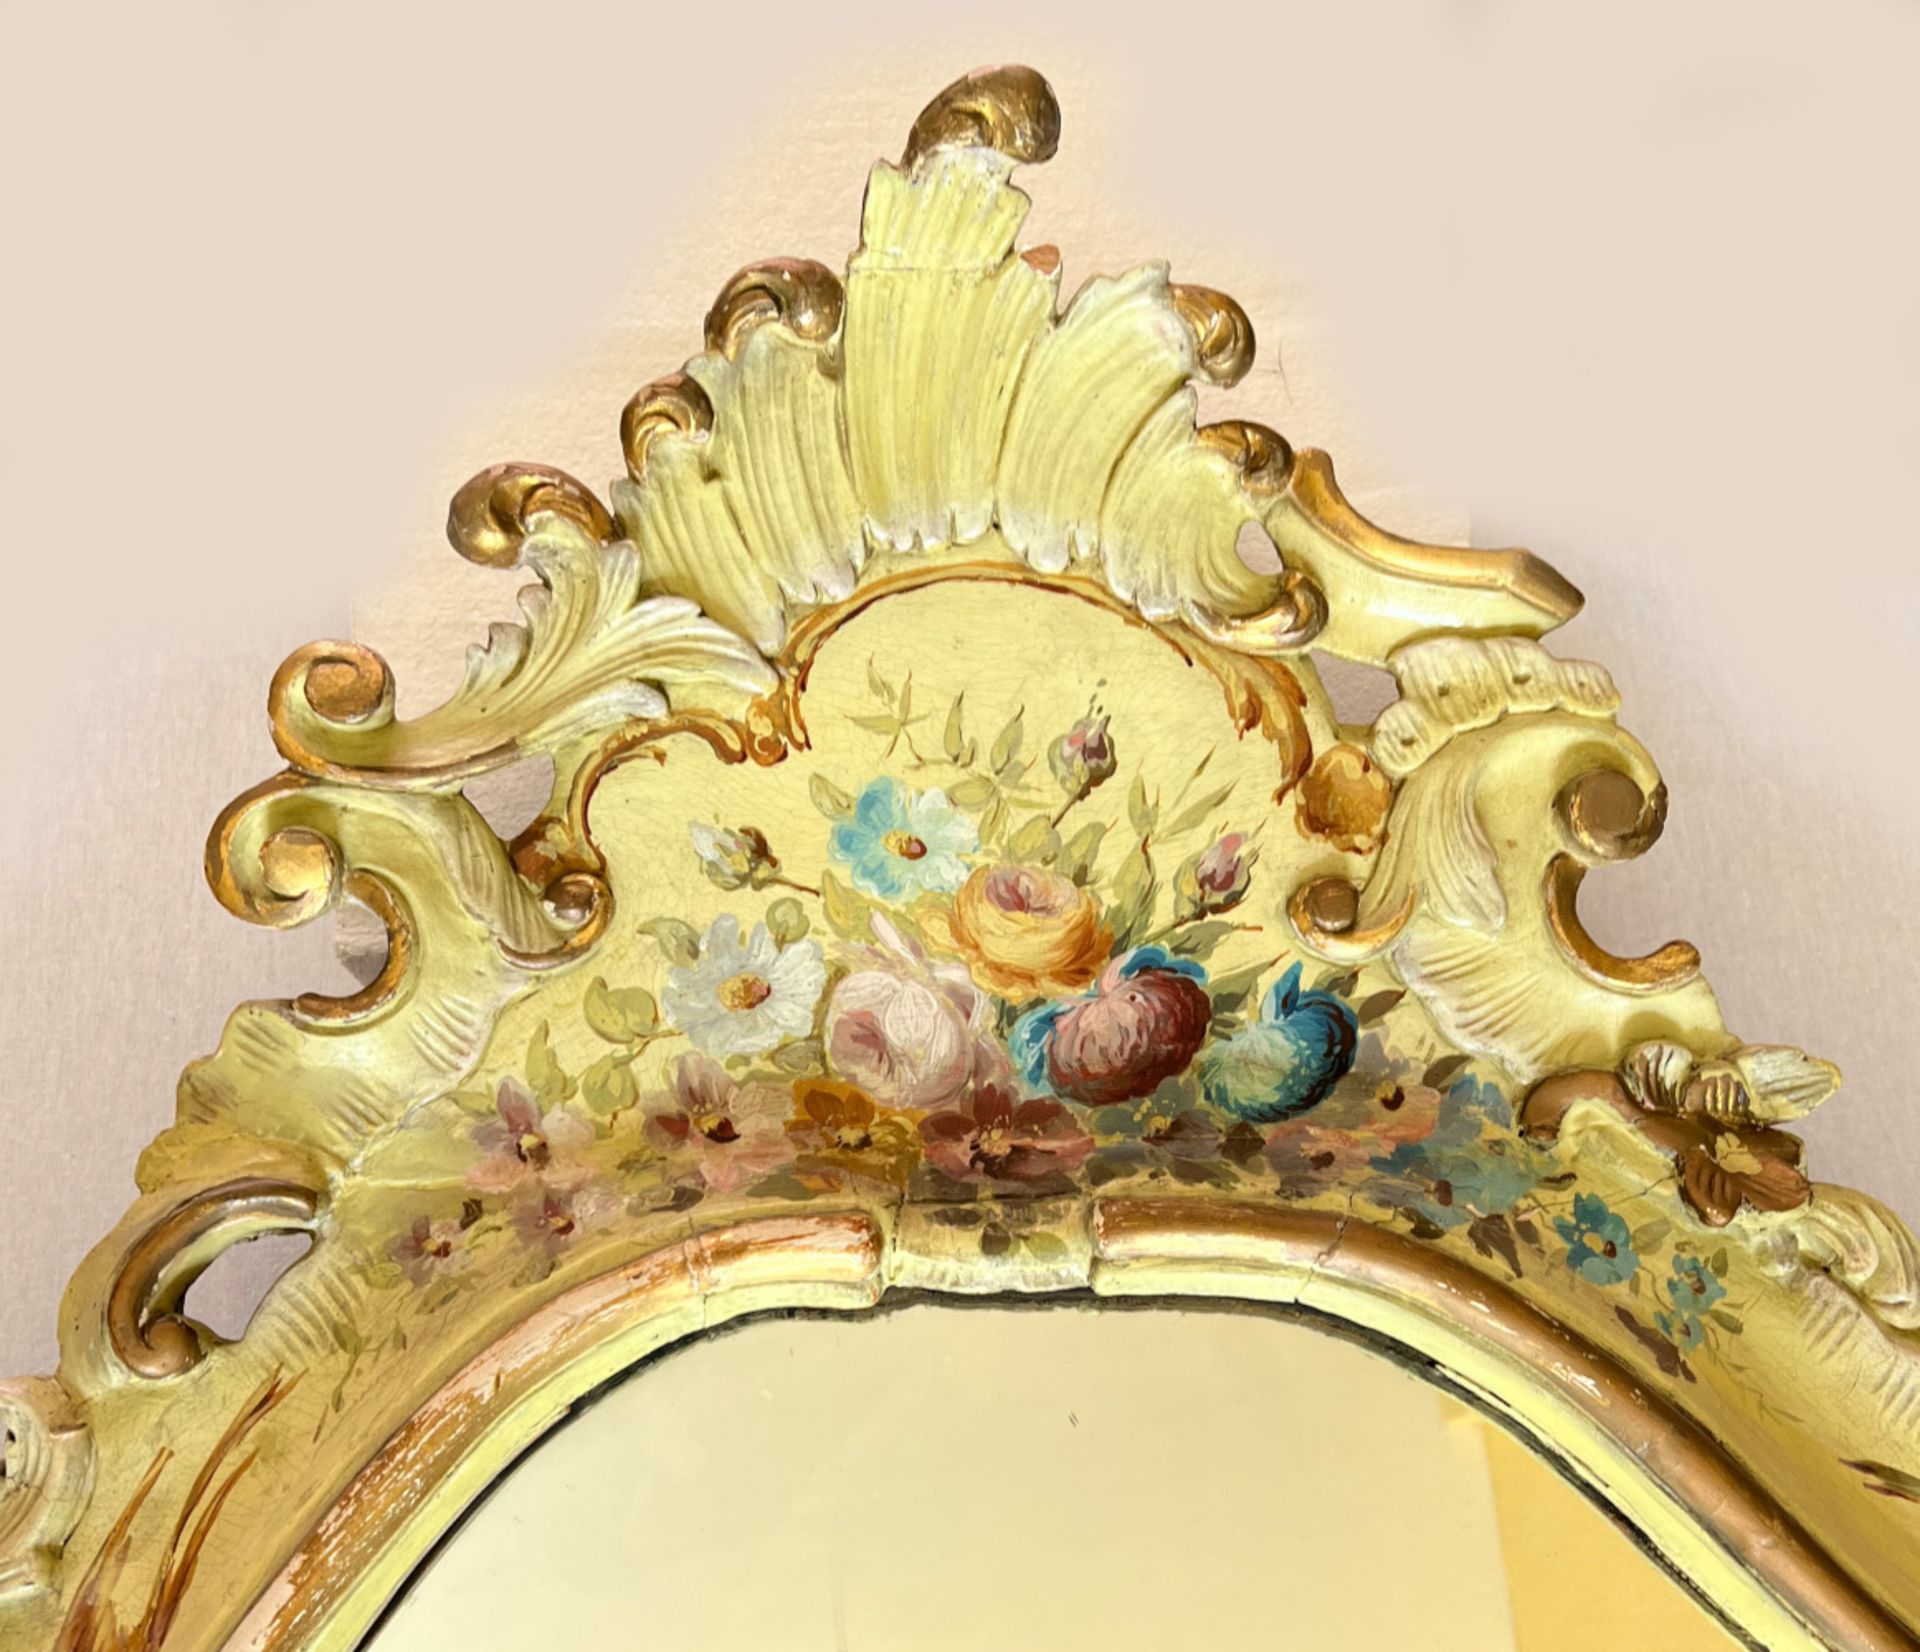 Barockspiegel mit Floralmalerei, Holz, farbig gefasst, Schlossmöbel, Altersspuren, 190 x 107 cm. - Bild 3 aus 11